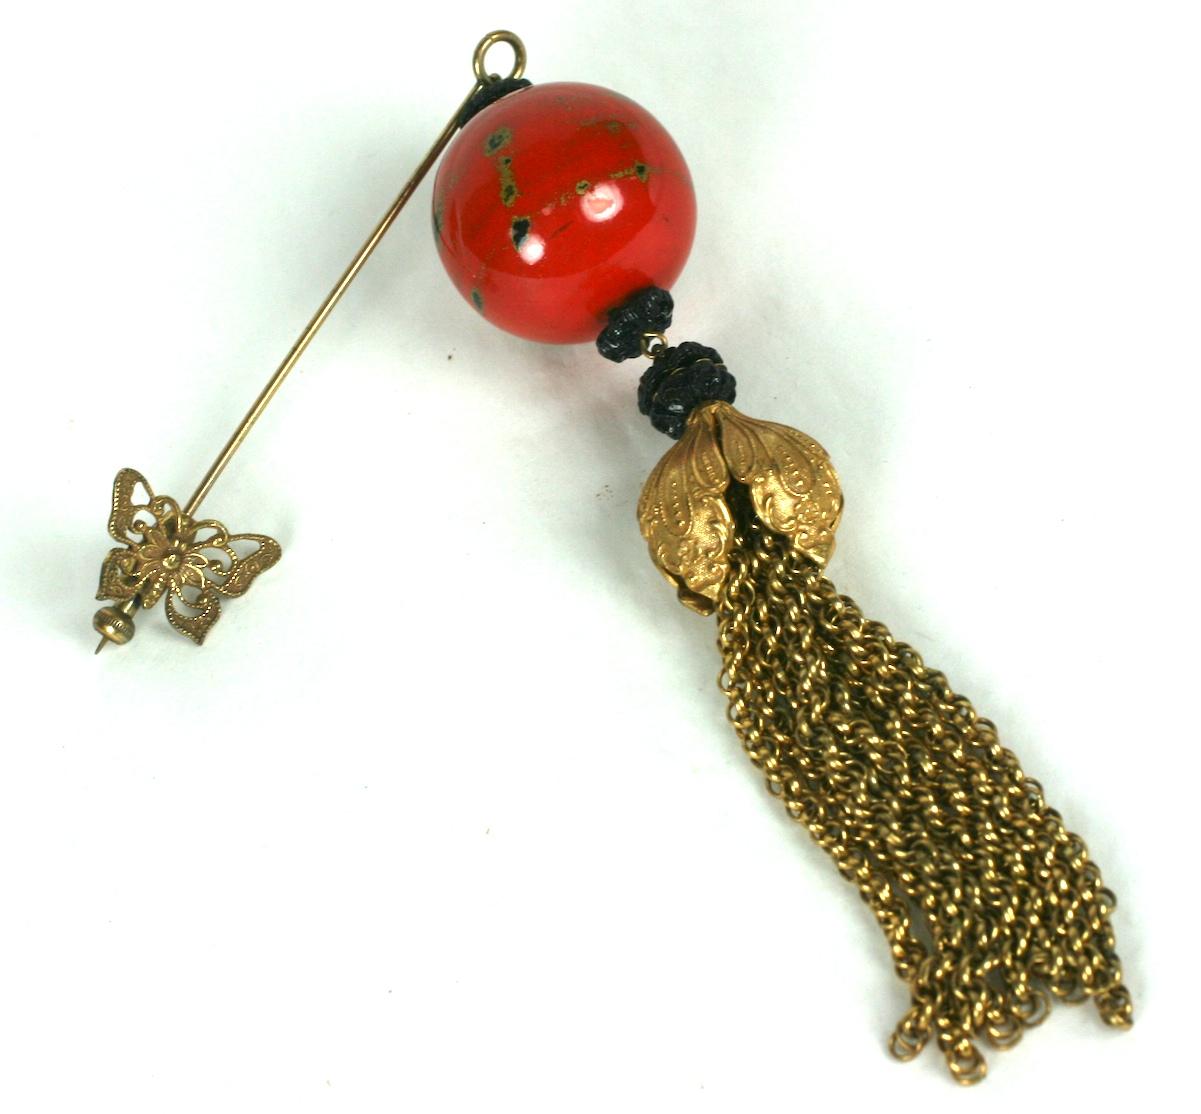 Superbe broche à épingles Miriam Haskell des années 1950. Signature métal doré russe avec perle rouge et noire laquée, intercalaires floraux noirs et gland massif. Fermoir à piston papillon.
4.5